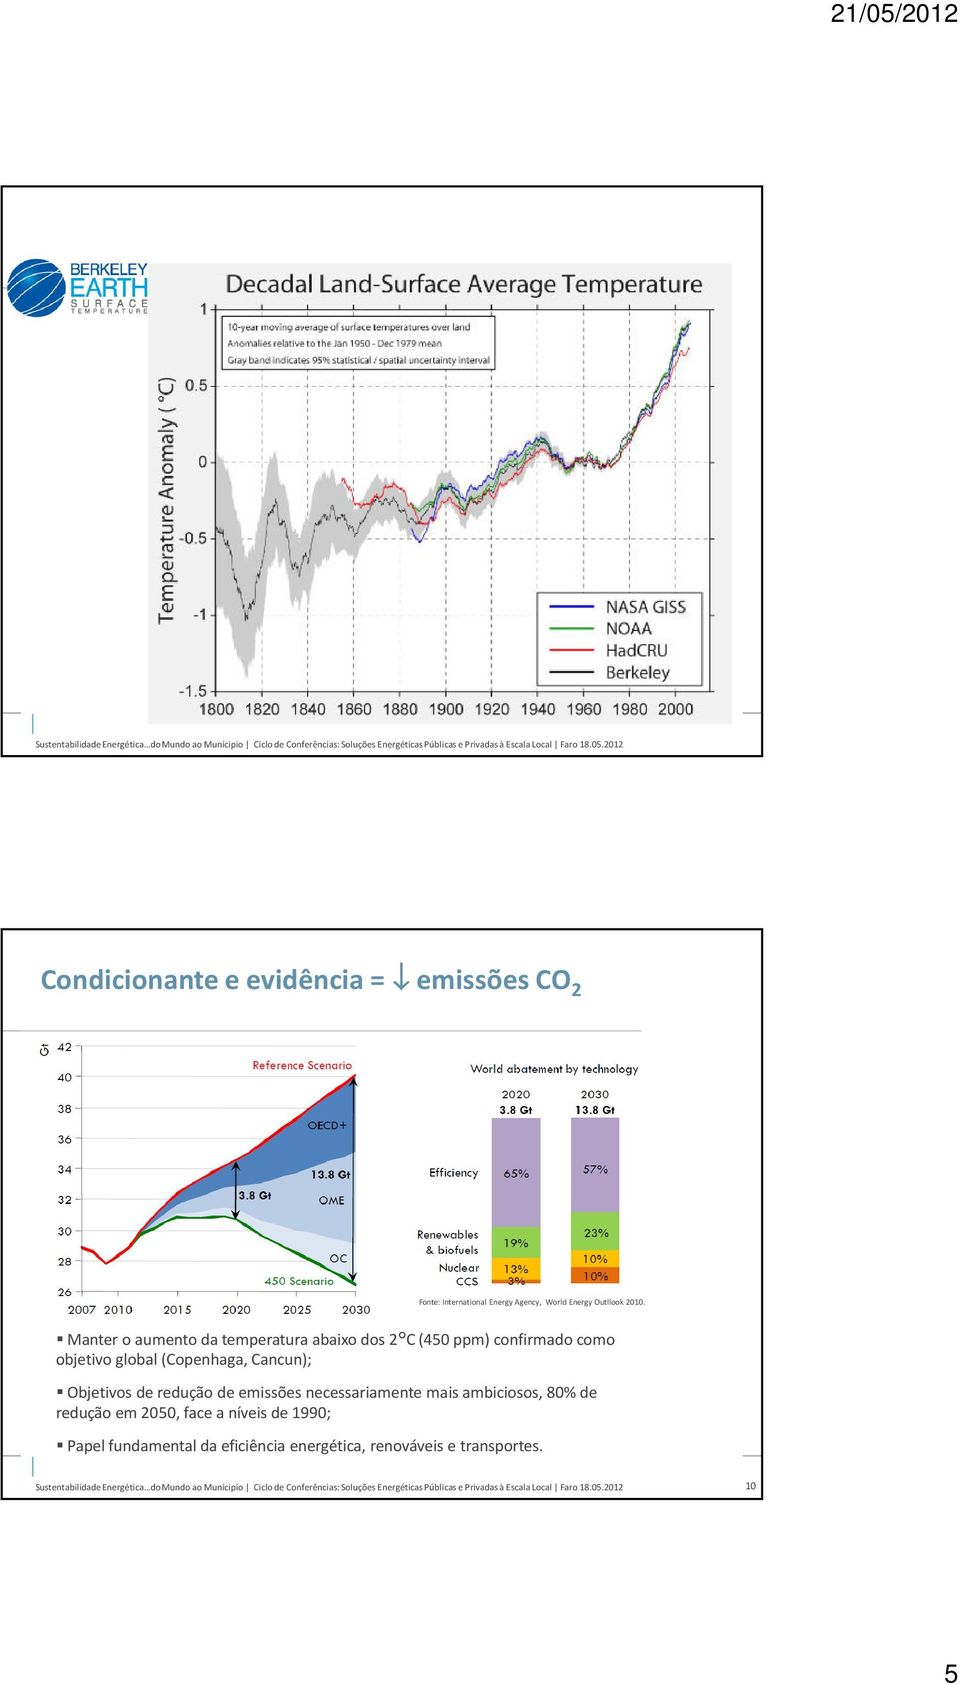 (Copenhaga, Cancun); Objetivos de redução de emissões necessariamente mais ambiciosos, 80% de